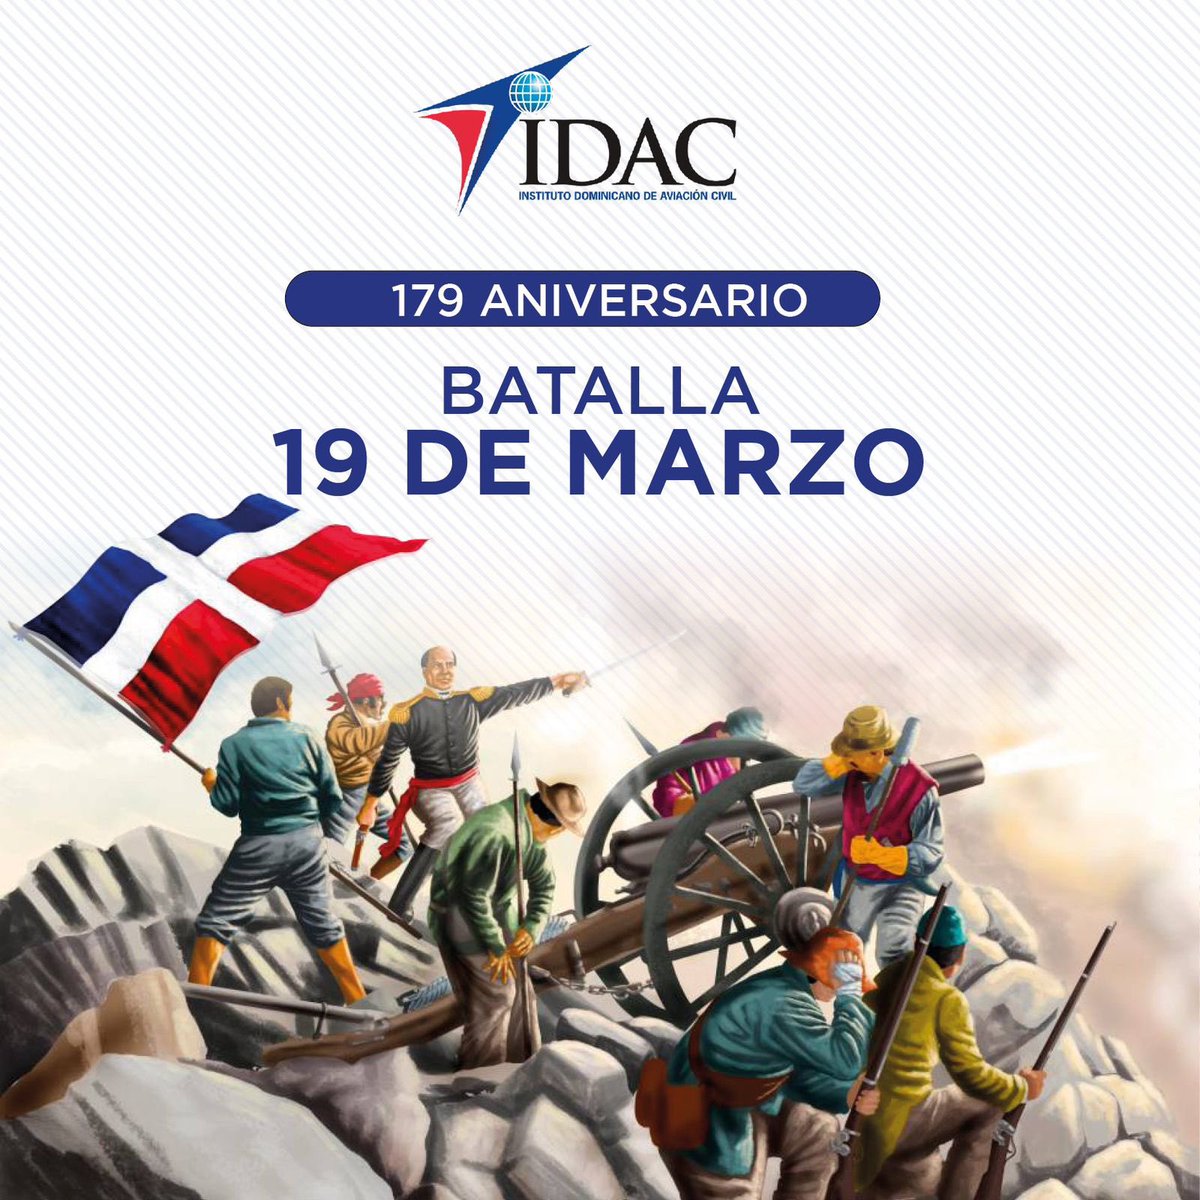 Hoy conmemoramos el 179 aniversario de la Batalla de Azua del 19 de Marzo, la primera gran gesta en defensa de la República Dominicana, librada por una fuerza de 2,500 soldados dominicanos que fueron reclutados para enfrentarse con el ejército invasor. #batalla19demarzo #idacrd